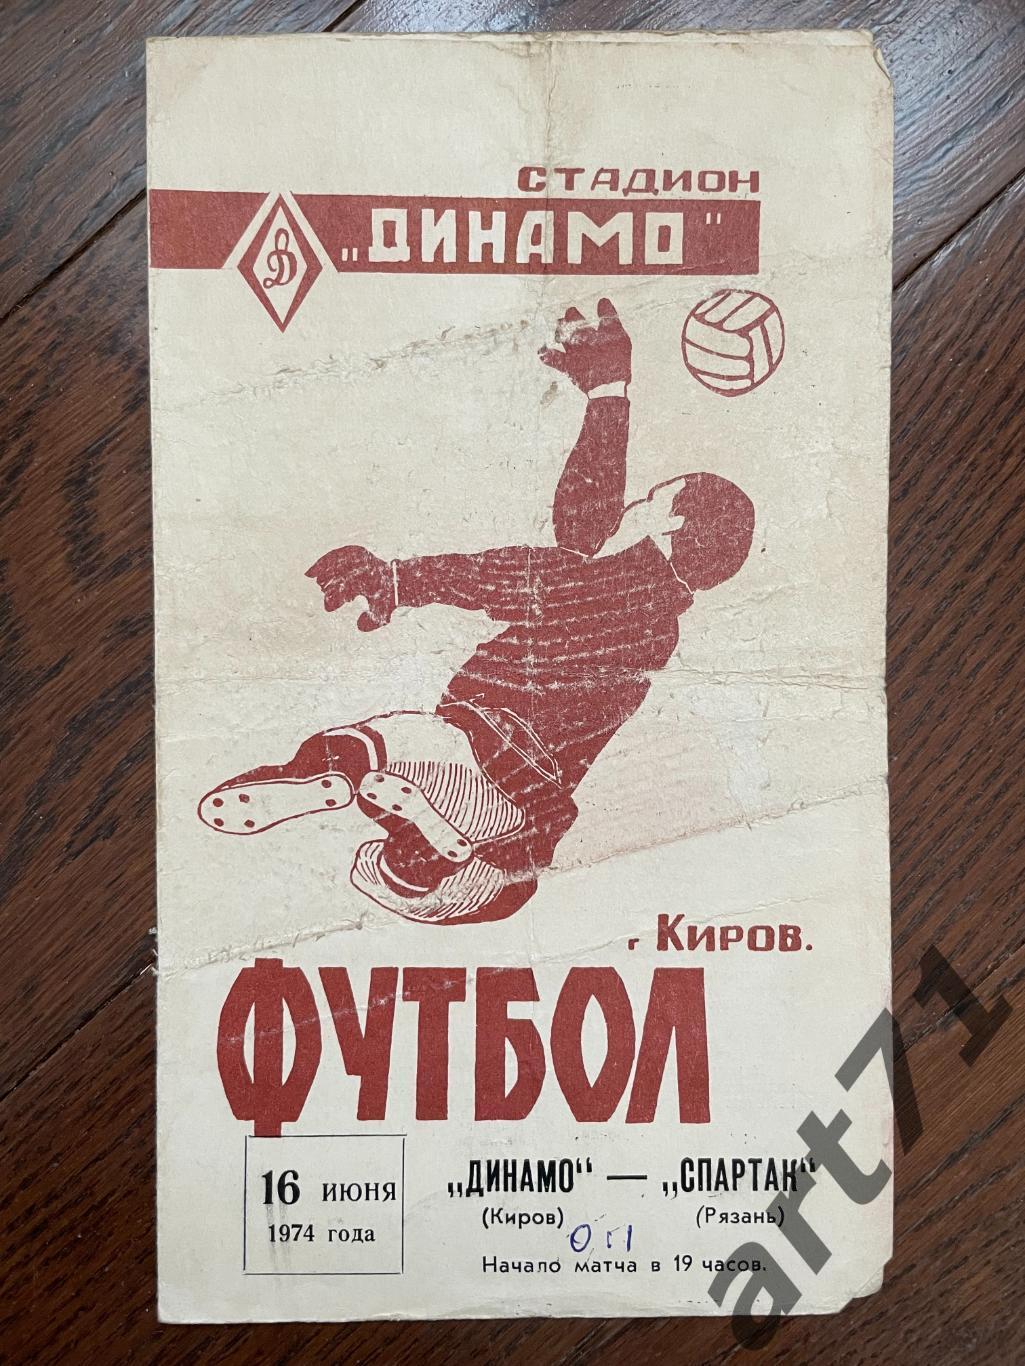 Динамо Киров - Спартак Рязань 1974